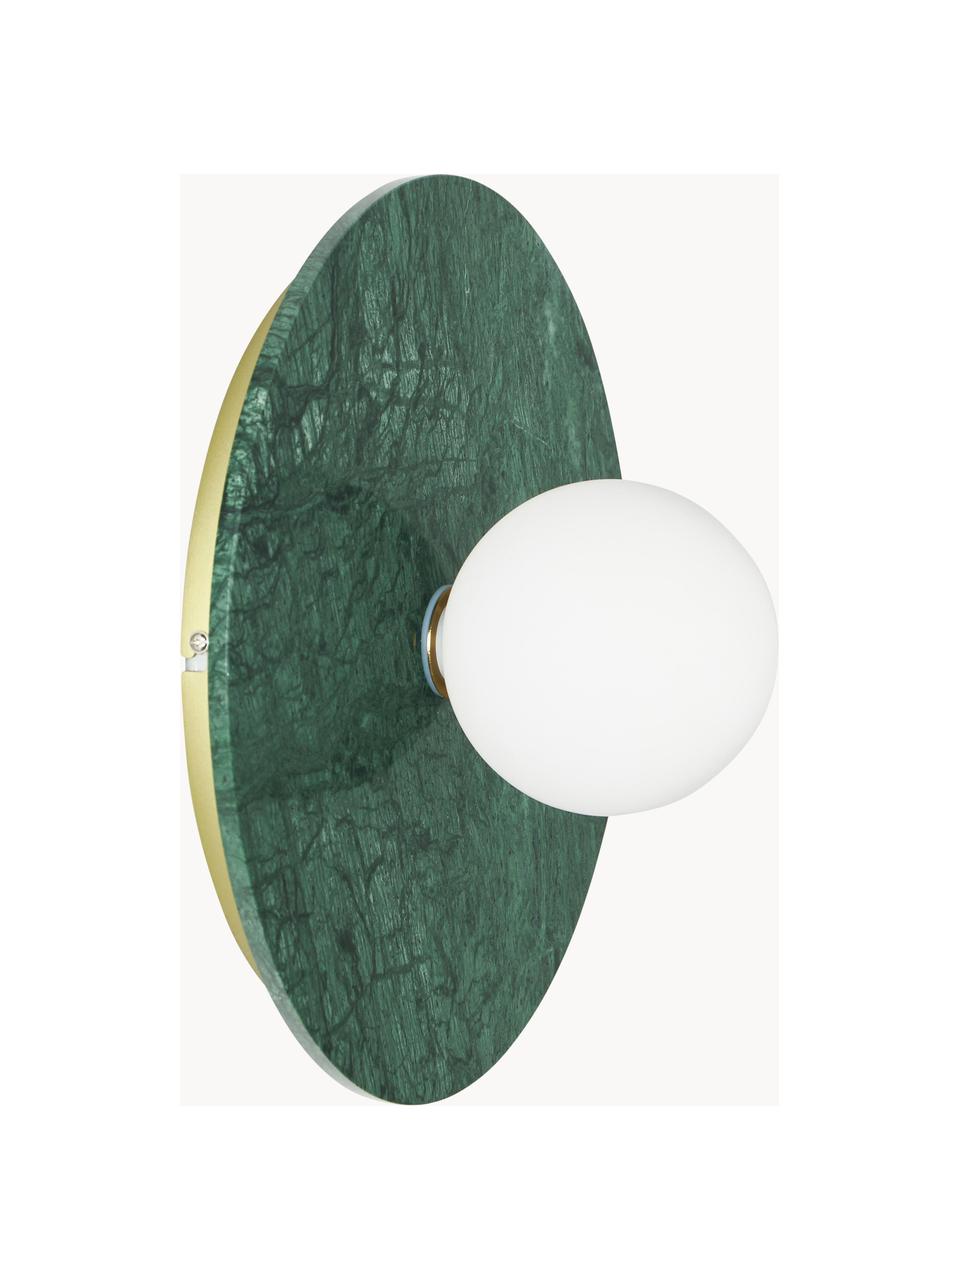 Nástěnné/stropní svítidlo z mramoru Cehlani, Zelená, mramorovaná, Ø 28 cm, V 16 cm